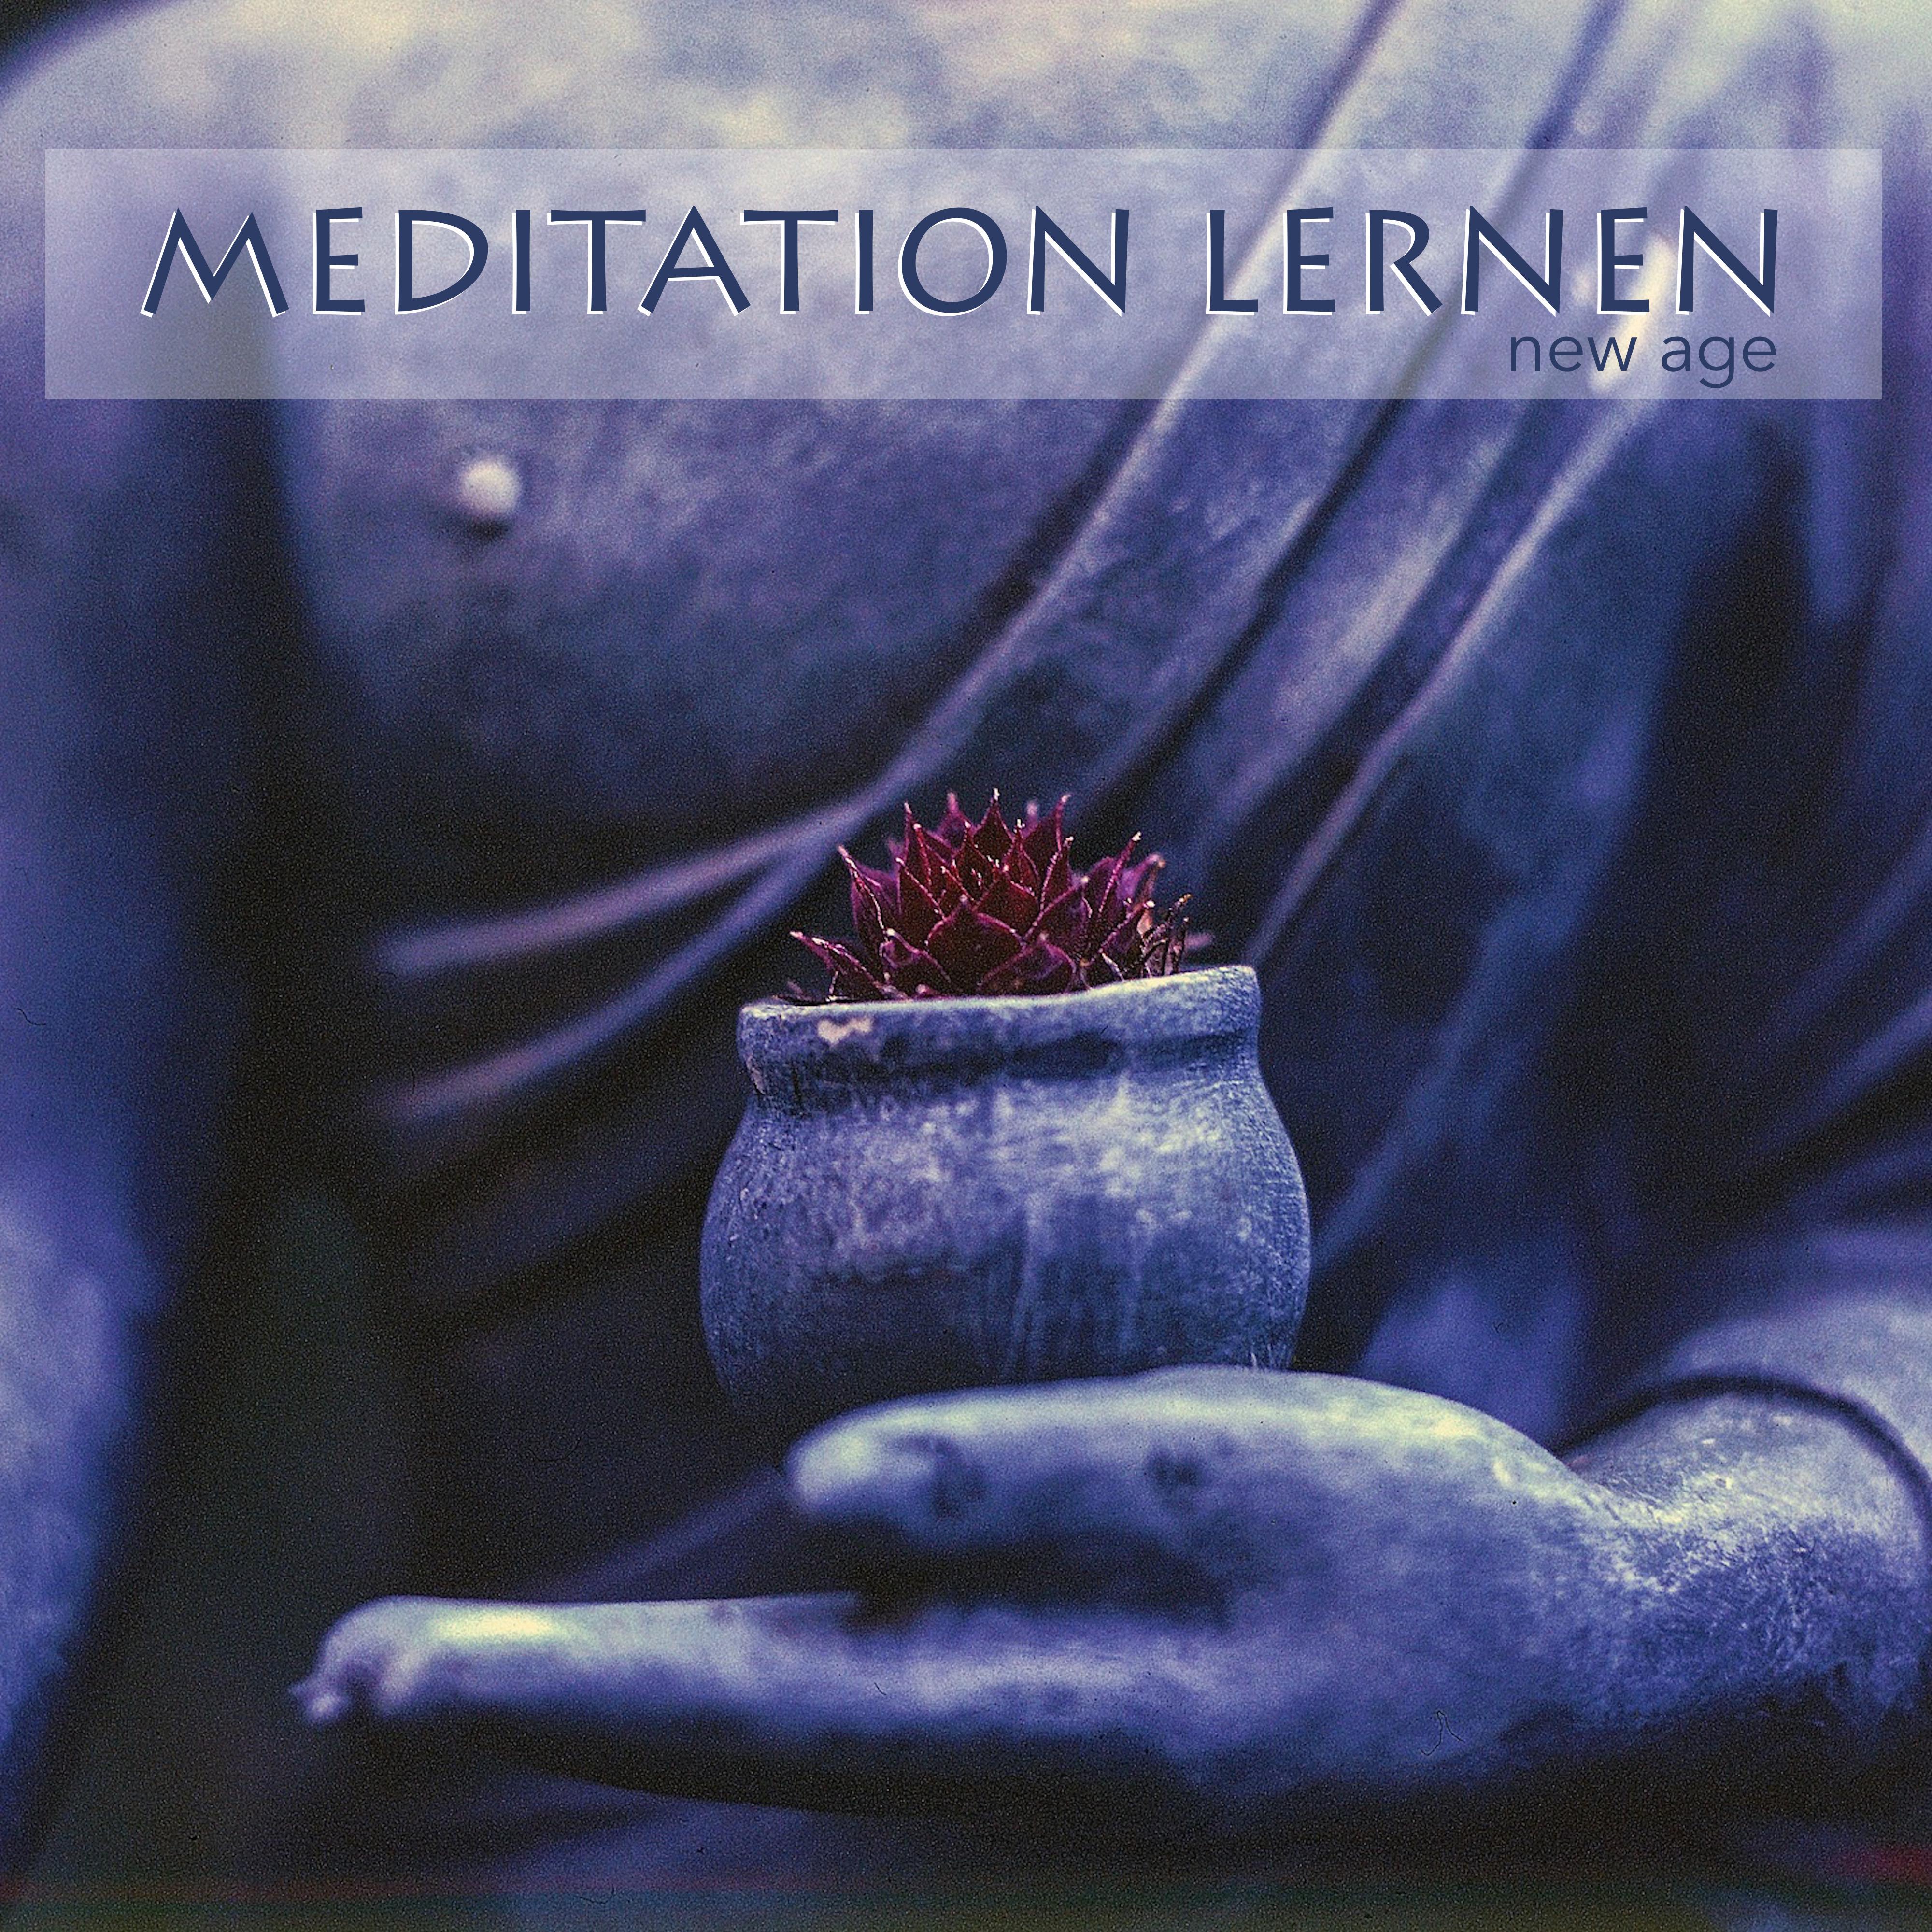 Hintergrundmusik für Meditation für Anfänger